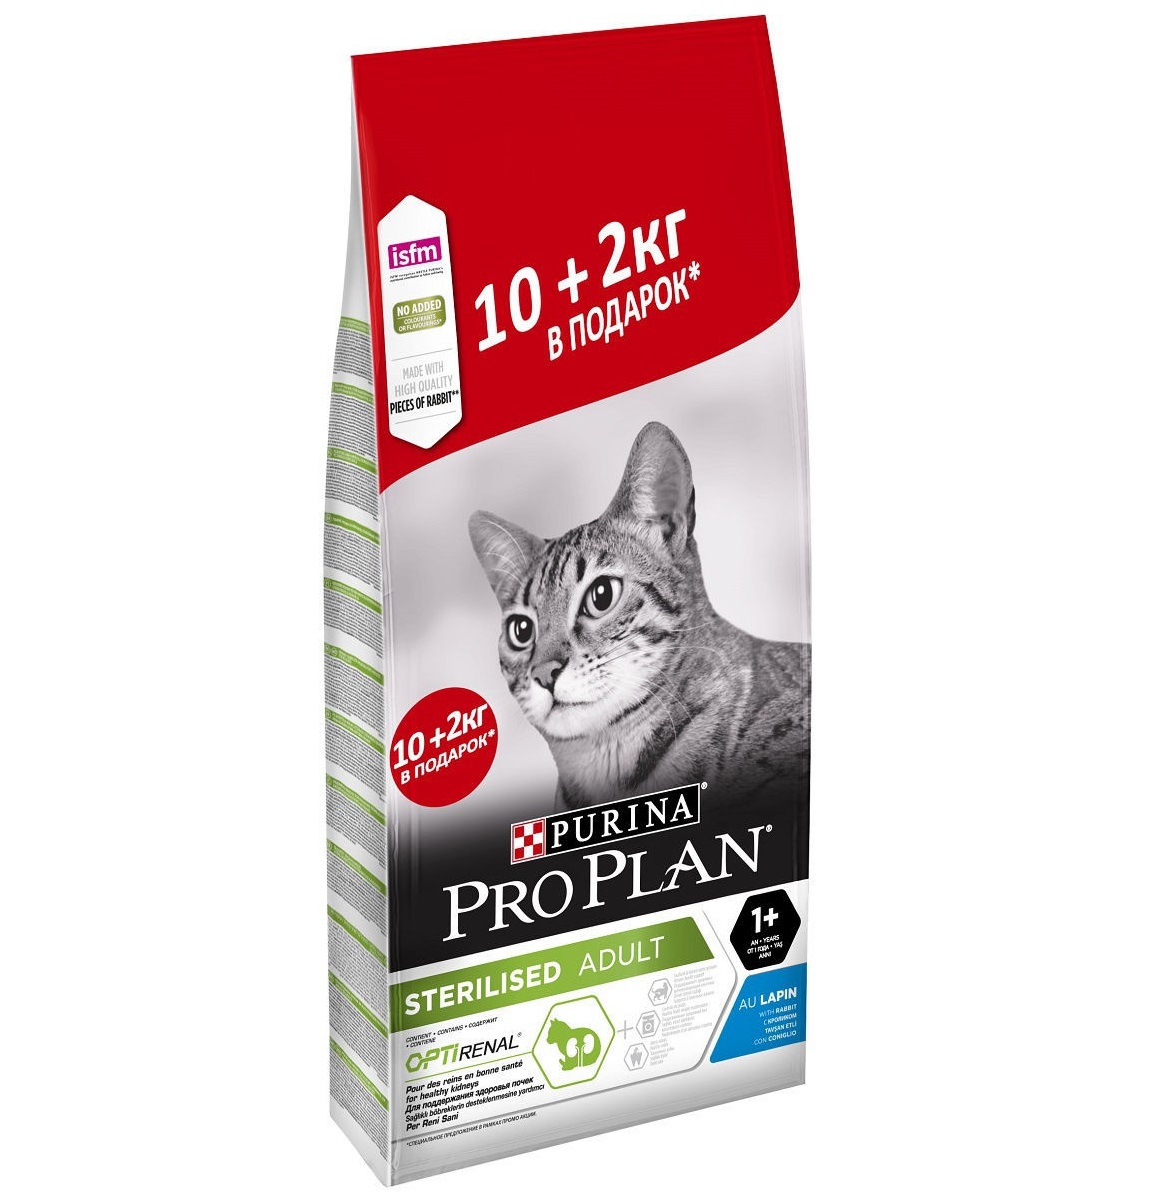 ПроПлан для кошек стерилизованных, Кролик. 10кг + 2кг (Pro Plan)